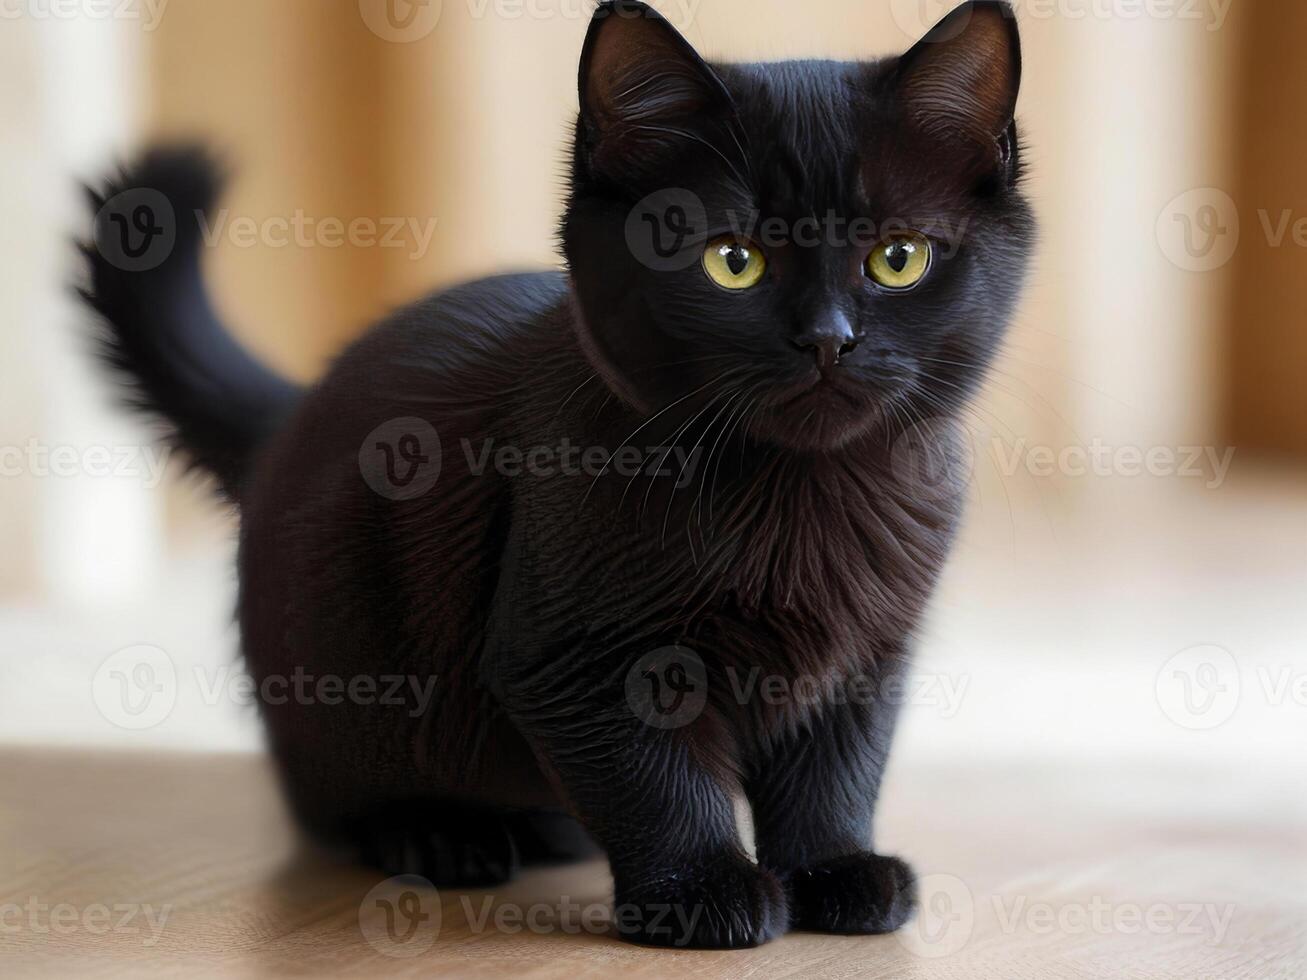 Little black cat, kitten. A pet photo